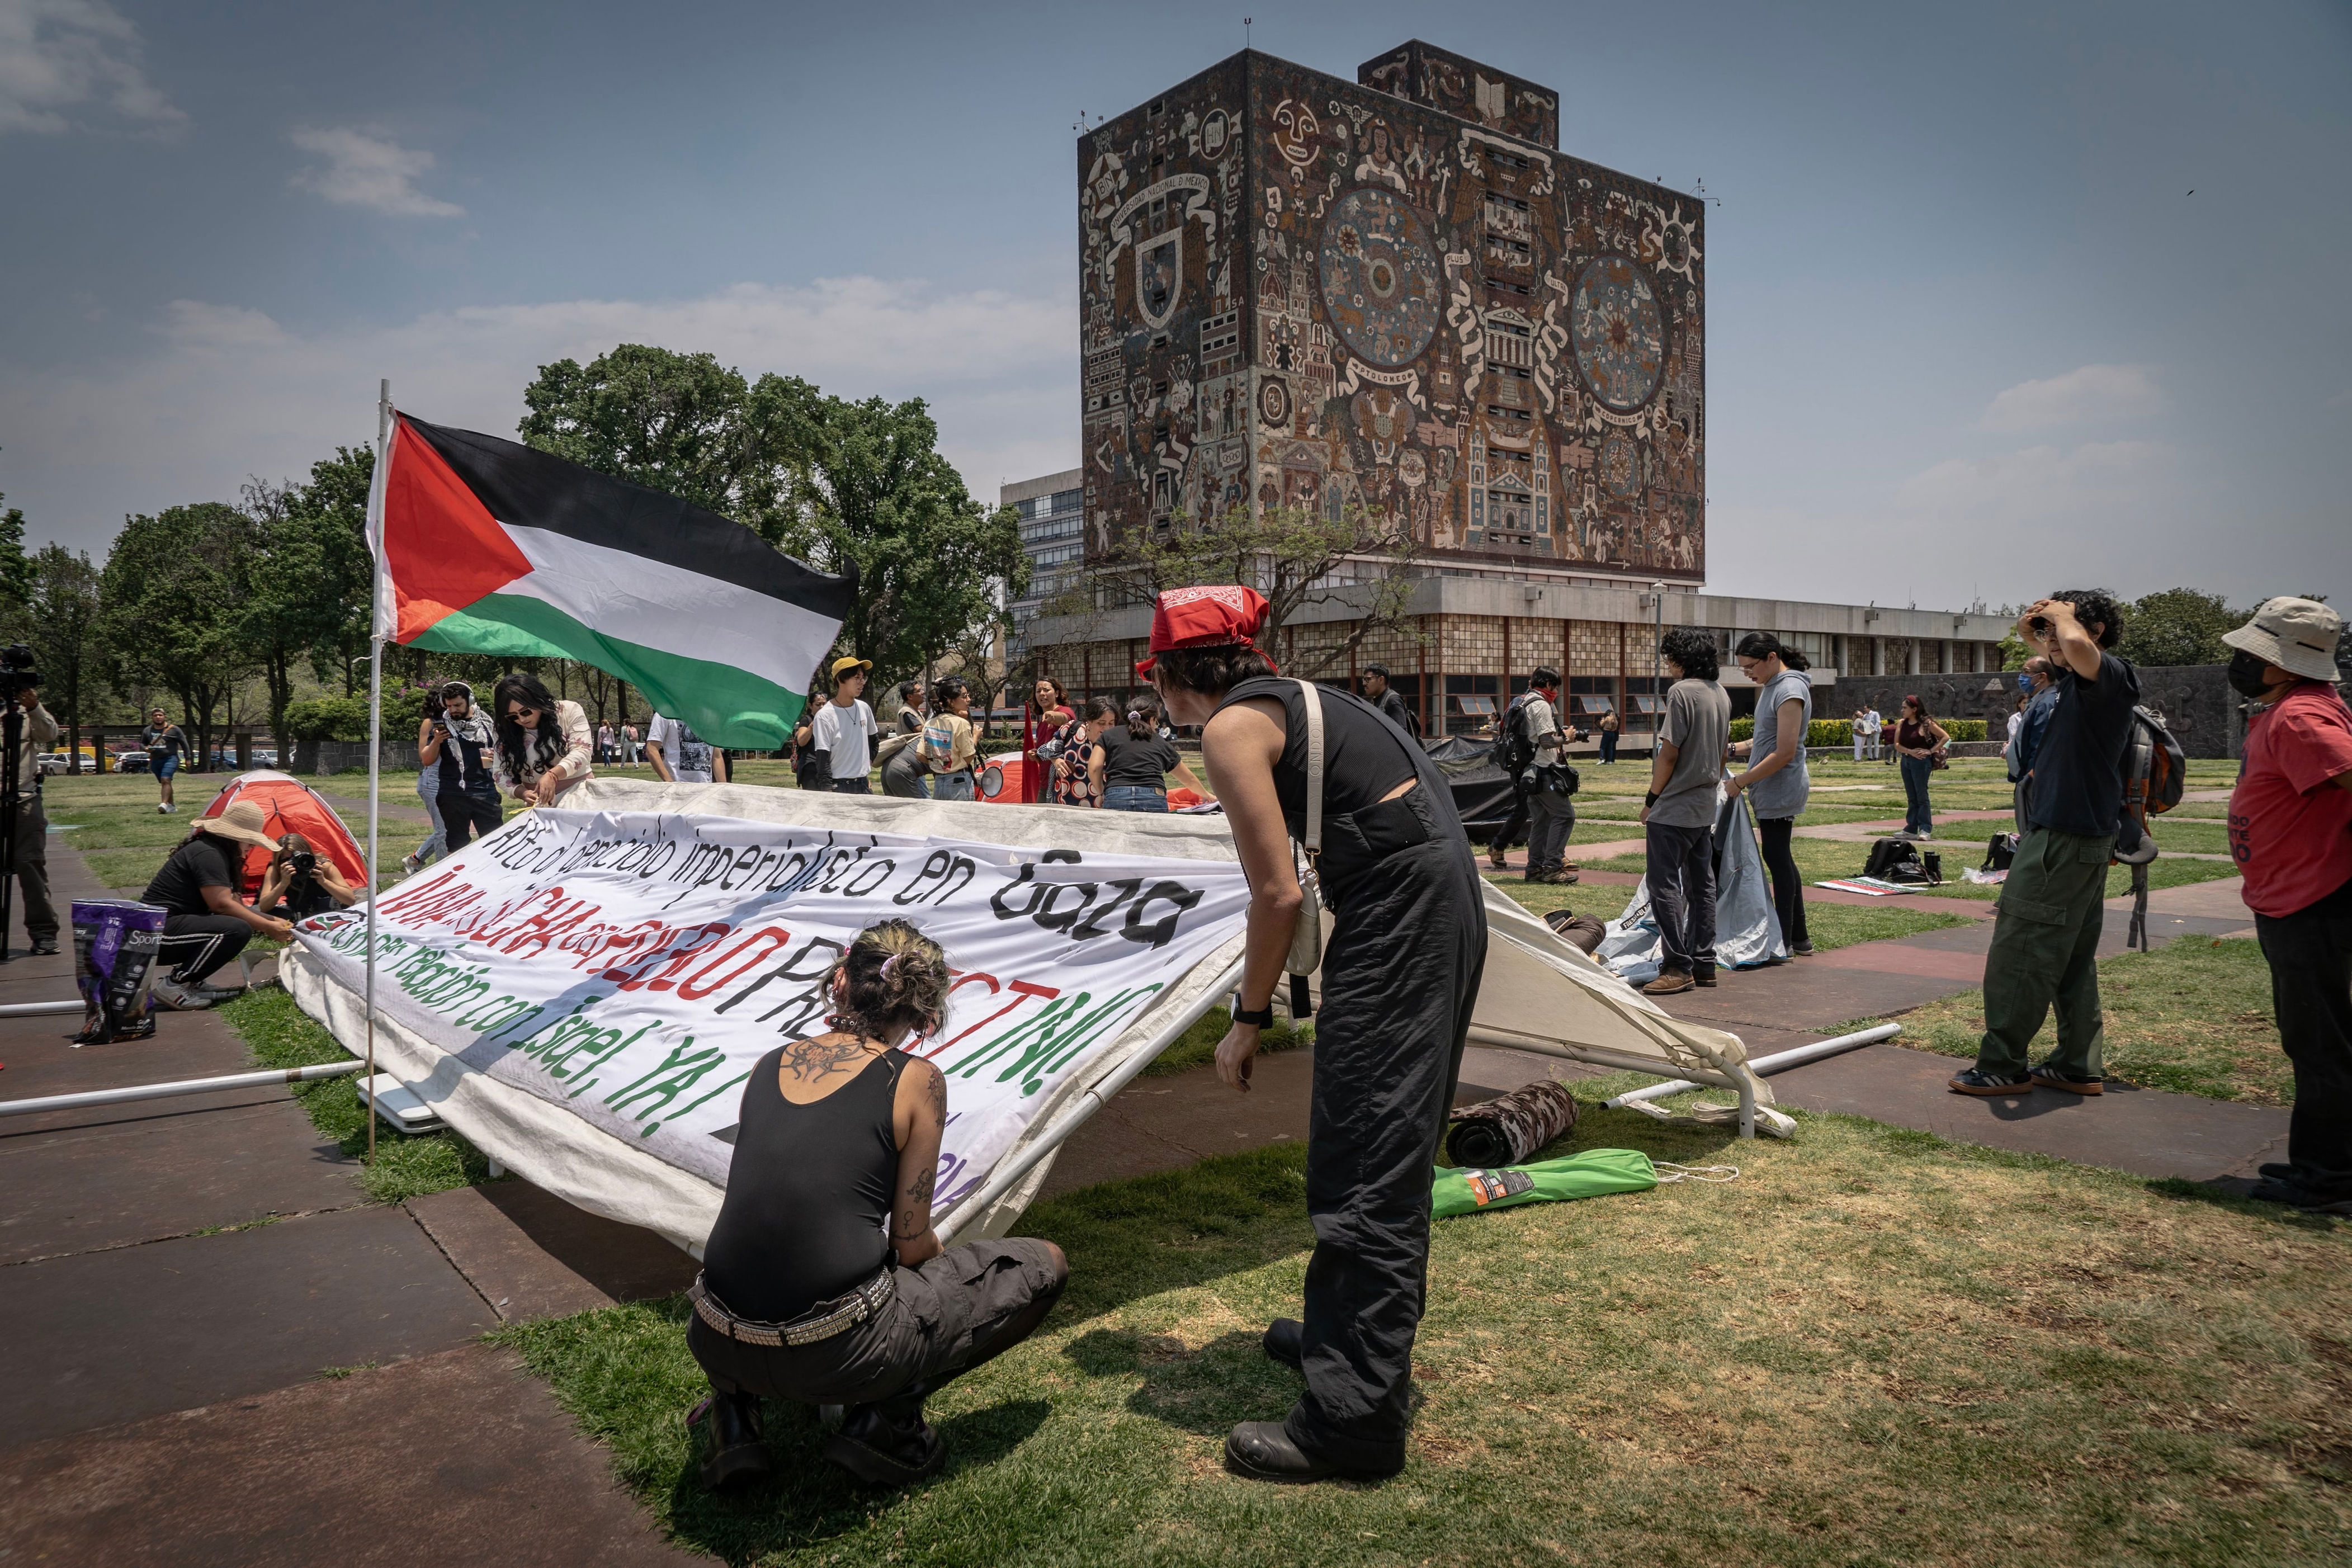 las protestas universitarias en solidaridad con gaza se extienden a méxico: “estamos llamando de forma urgente a que se pare un genocidio”